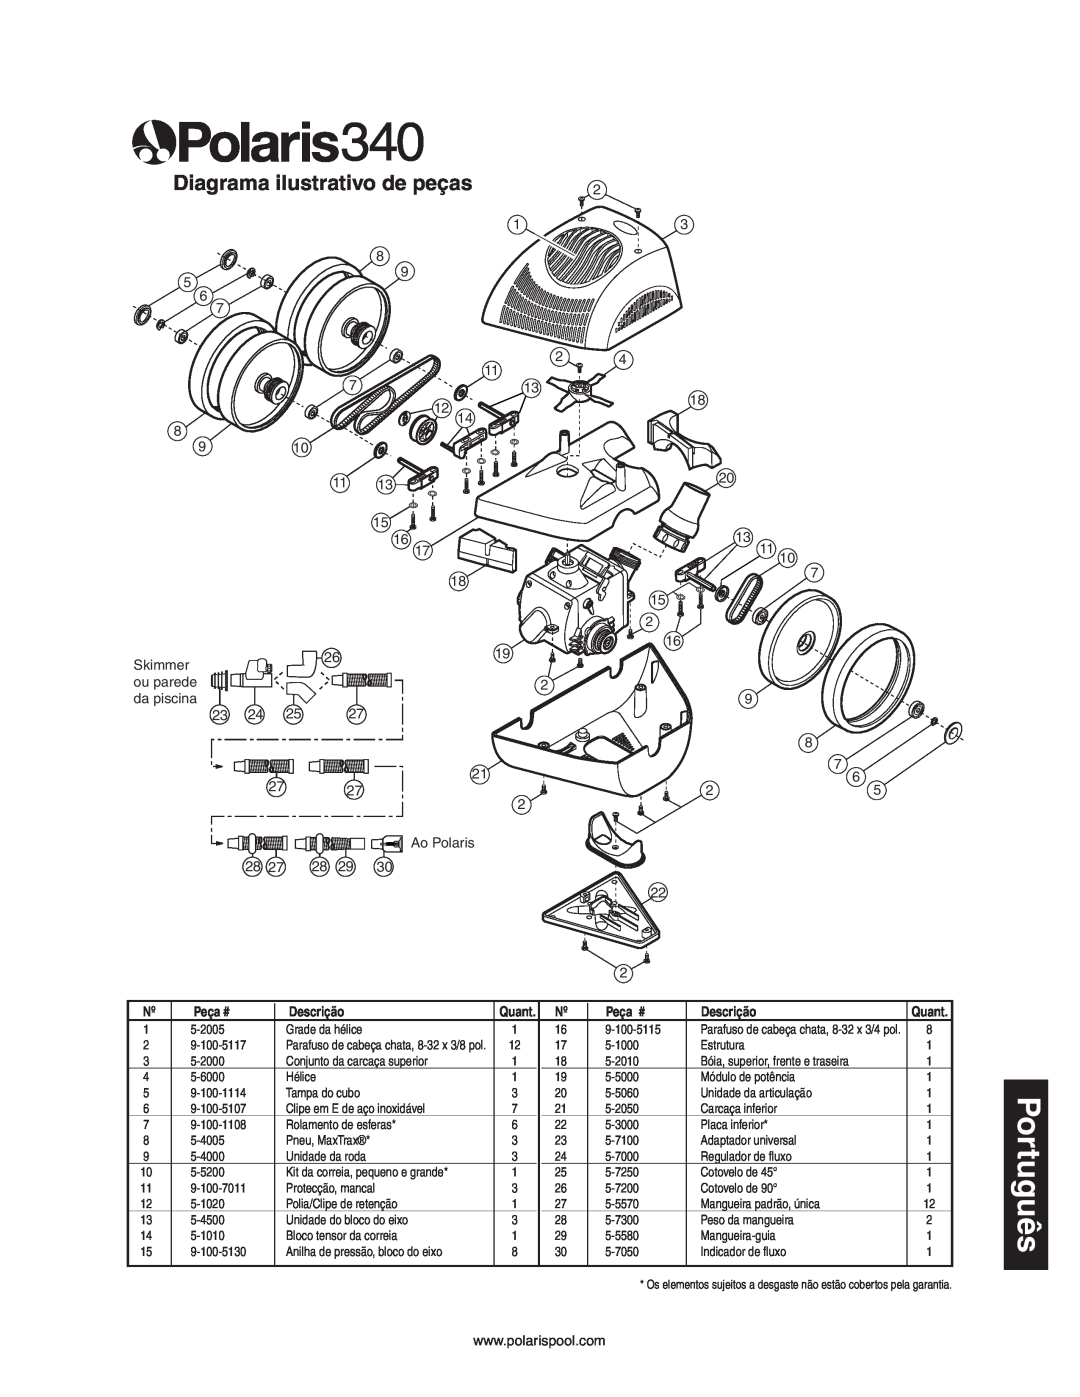 Polaris 340 owner manual Diagrama ilustrativo de peças, Peça #, Descrição 